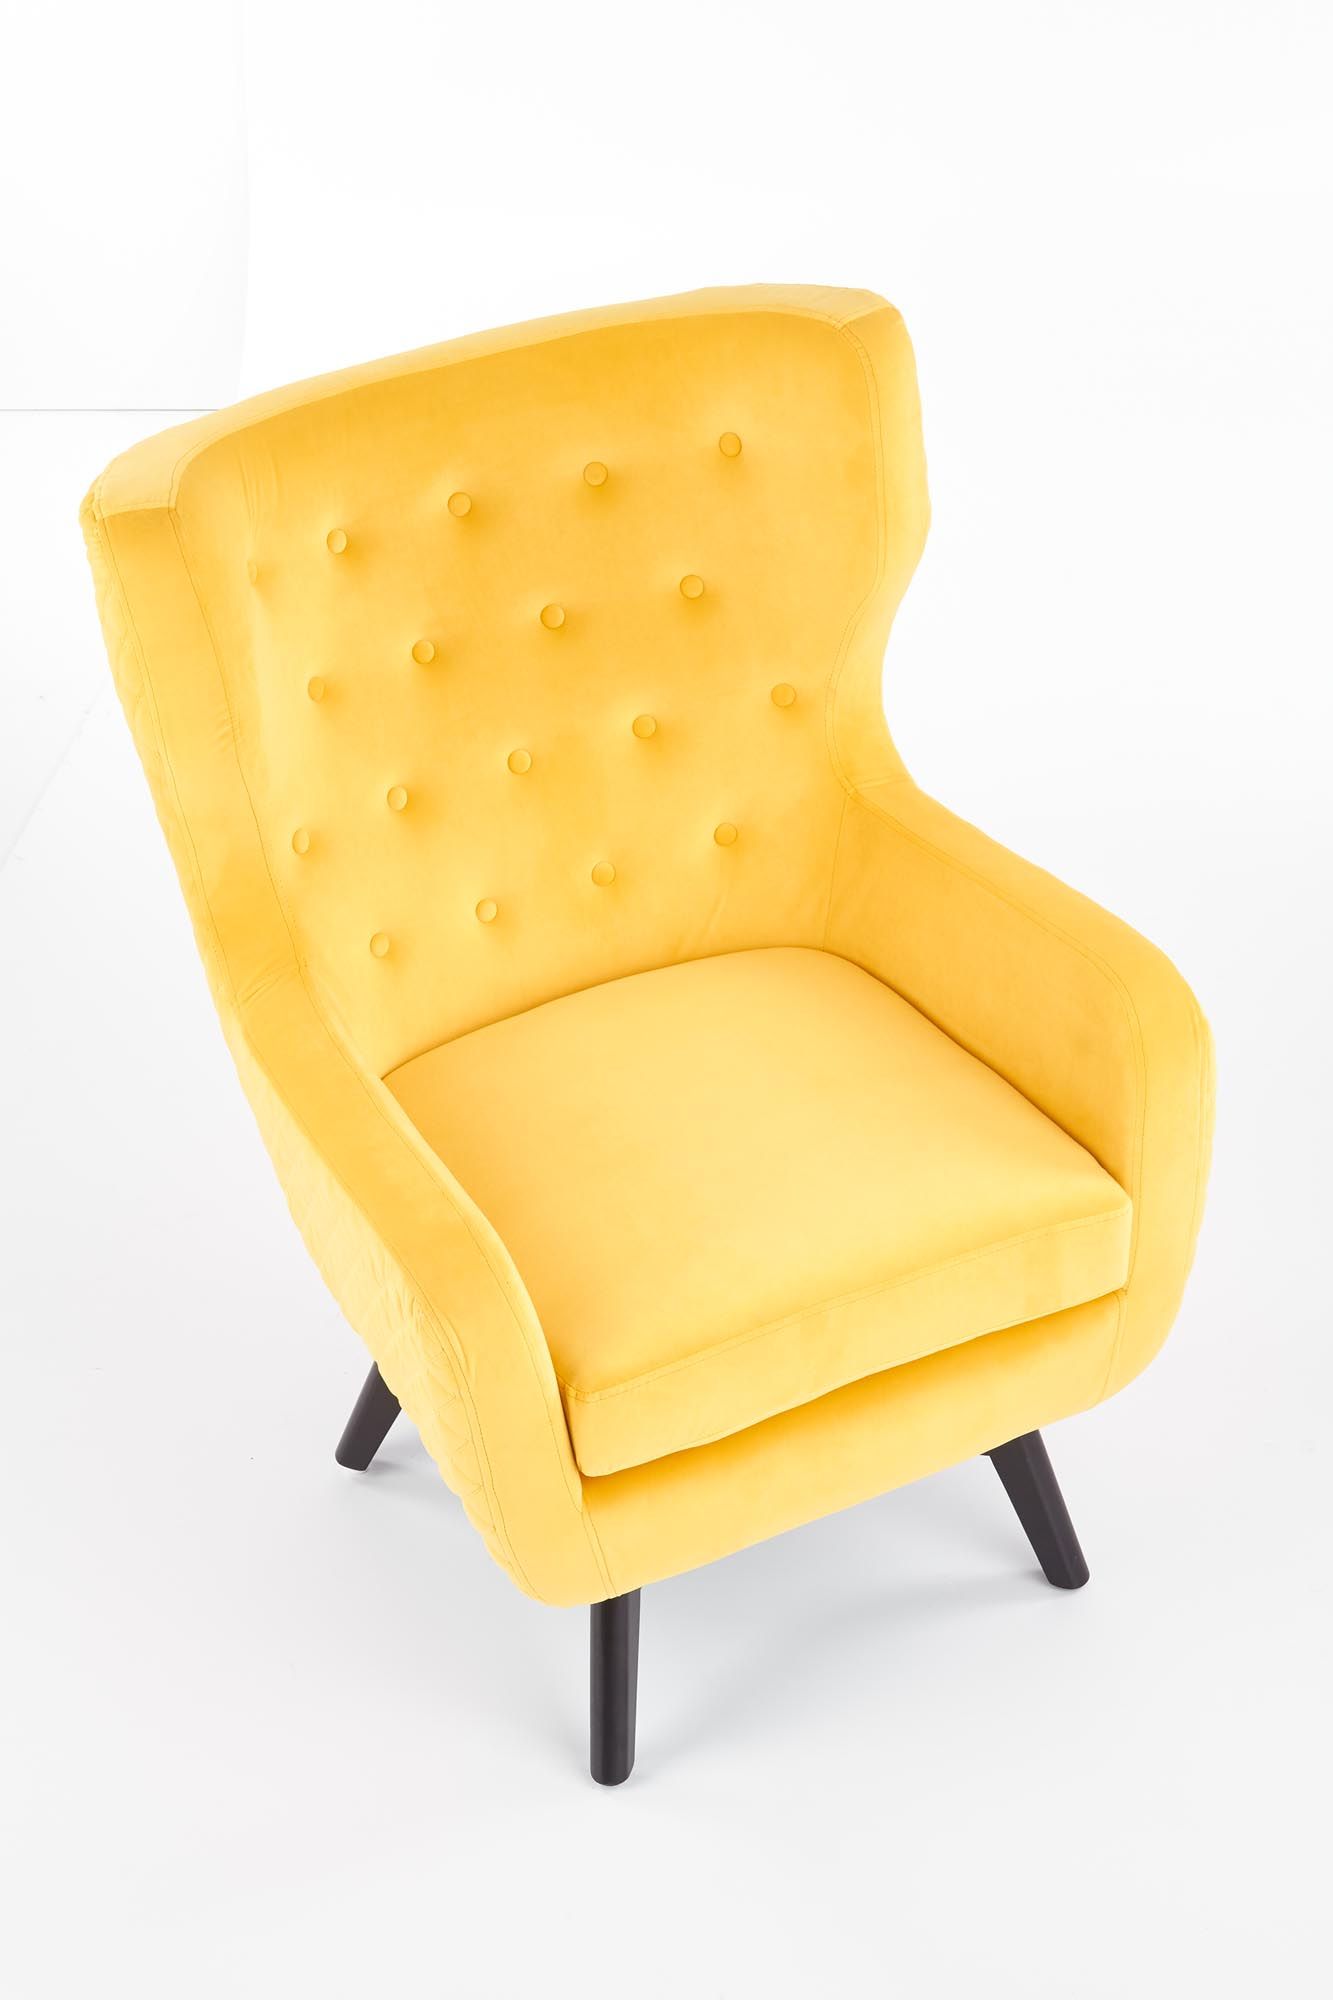 Горчичное кресло. Кресло Риль Velvet Mustard. Кресло икеа горчичное. Кресло горчичного цвета с высокой спинкой. Стул кресло горчичного цвета.